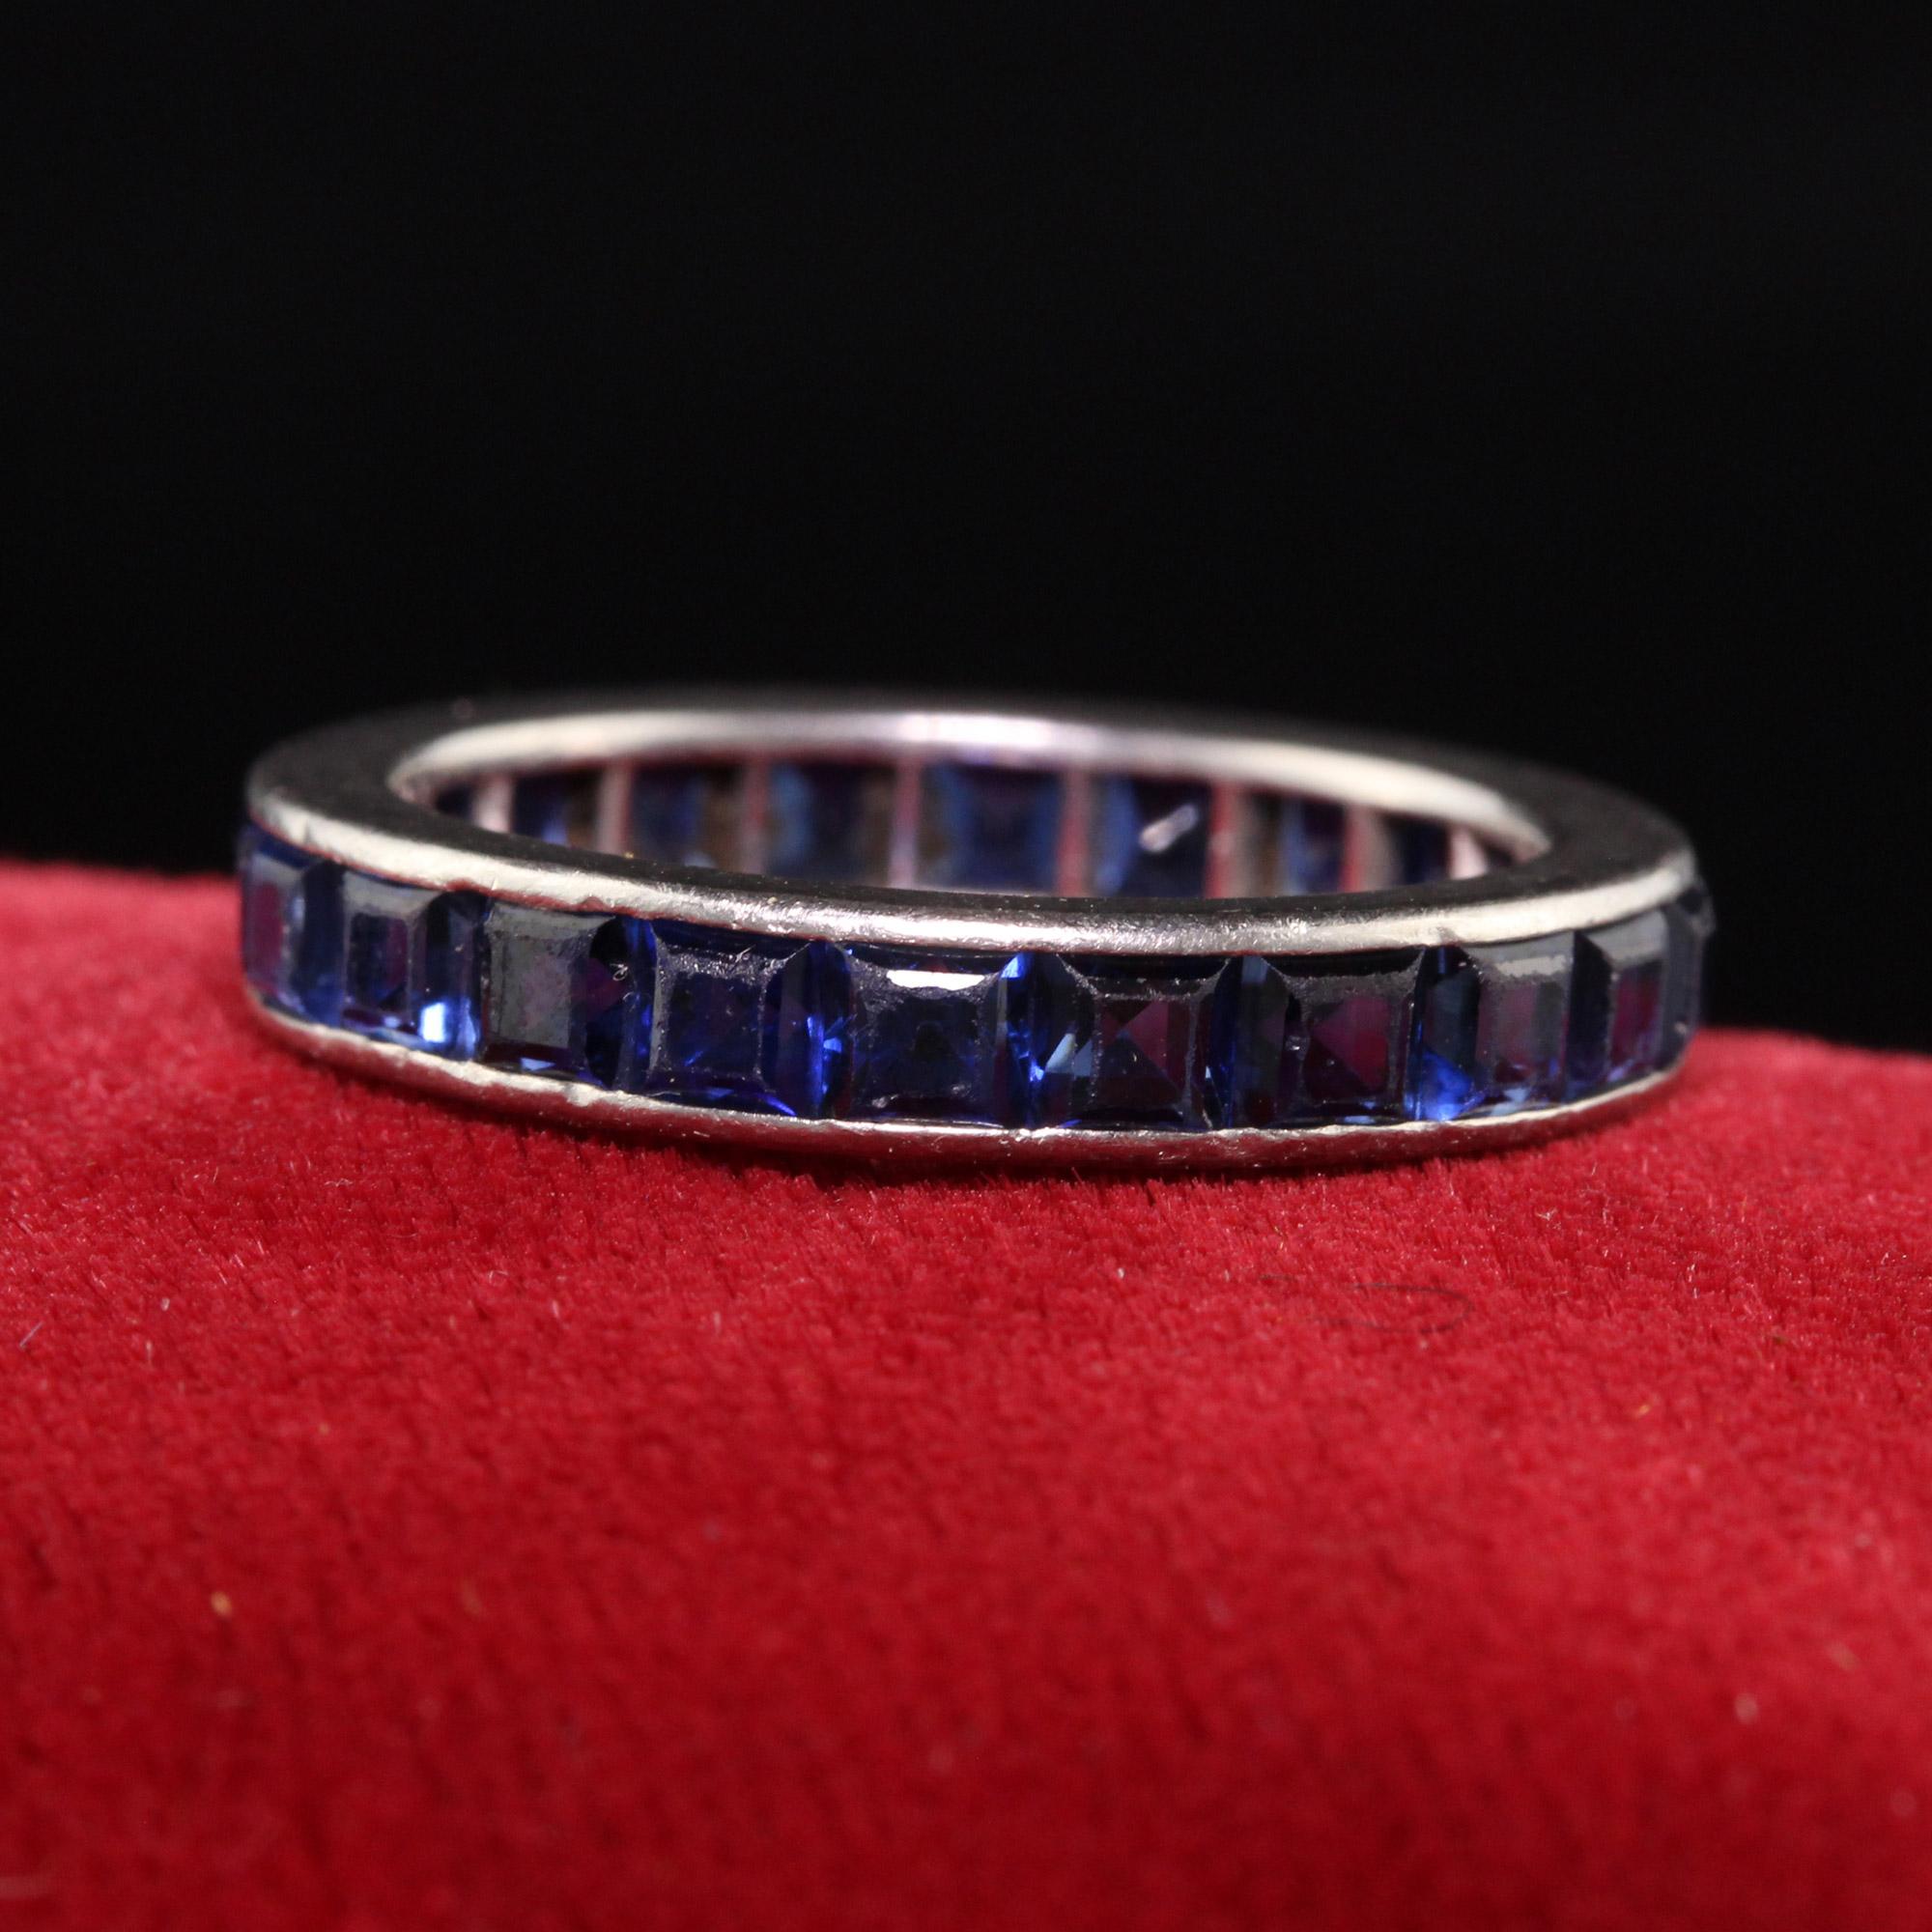 Magnifique anneau d'éternité Art Déco en platine avec saphirs taillés en carré. Cette incroyable alliance est fabriquée en platine et comporte de grands saphirs carrés tout autour de l'anneau.

Article #R1189

Métal : Platine

Poids : 4,2